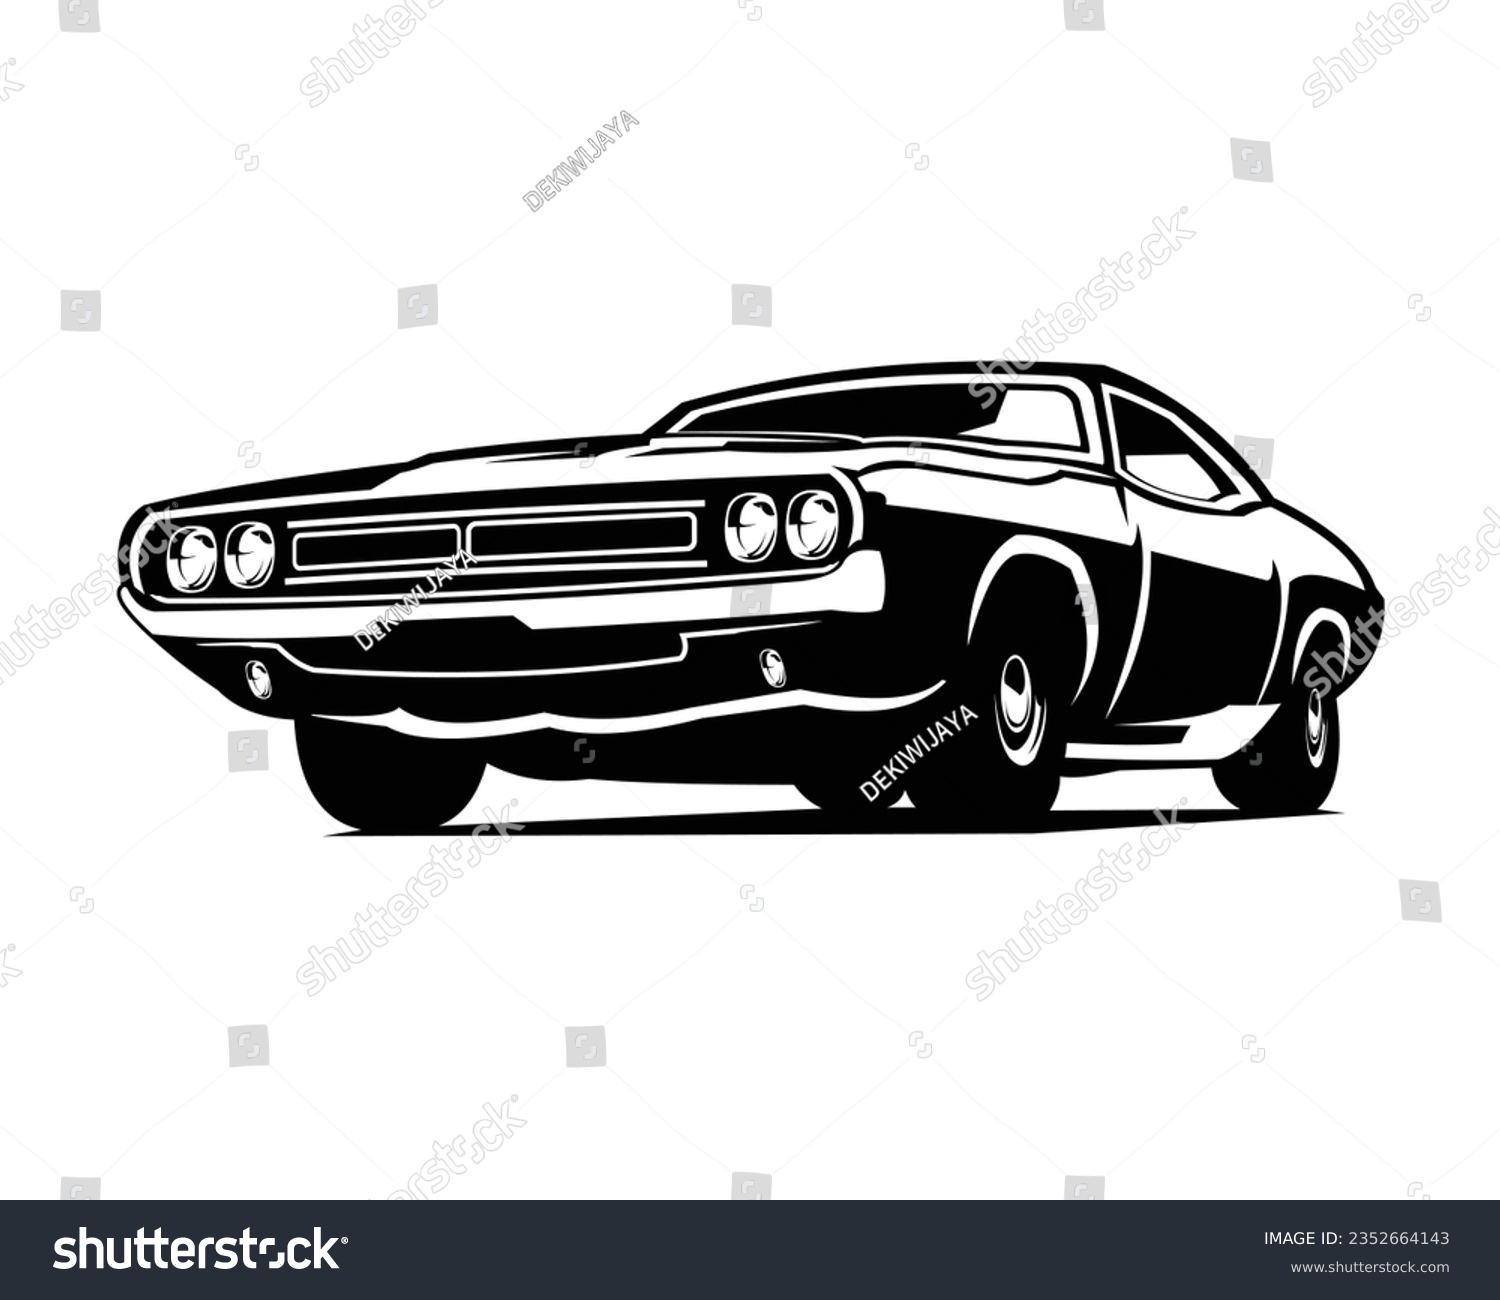 SVG of vector illustration of a 1969 dodge super bee car. silhouette vector design. Best for logo, badge, emblem, icon, design sticker, vintage car industry svg